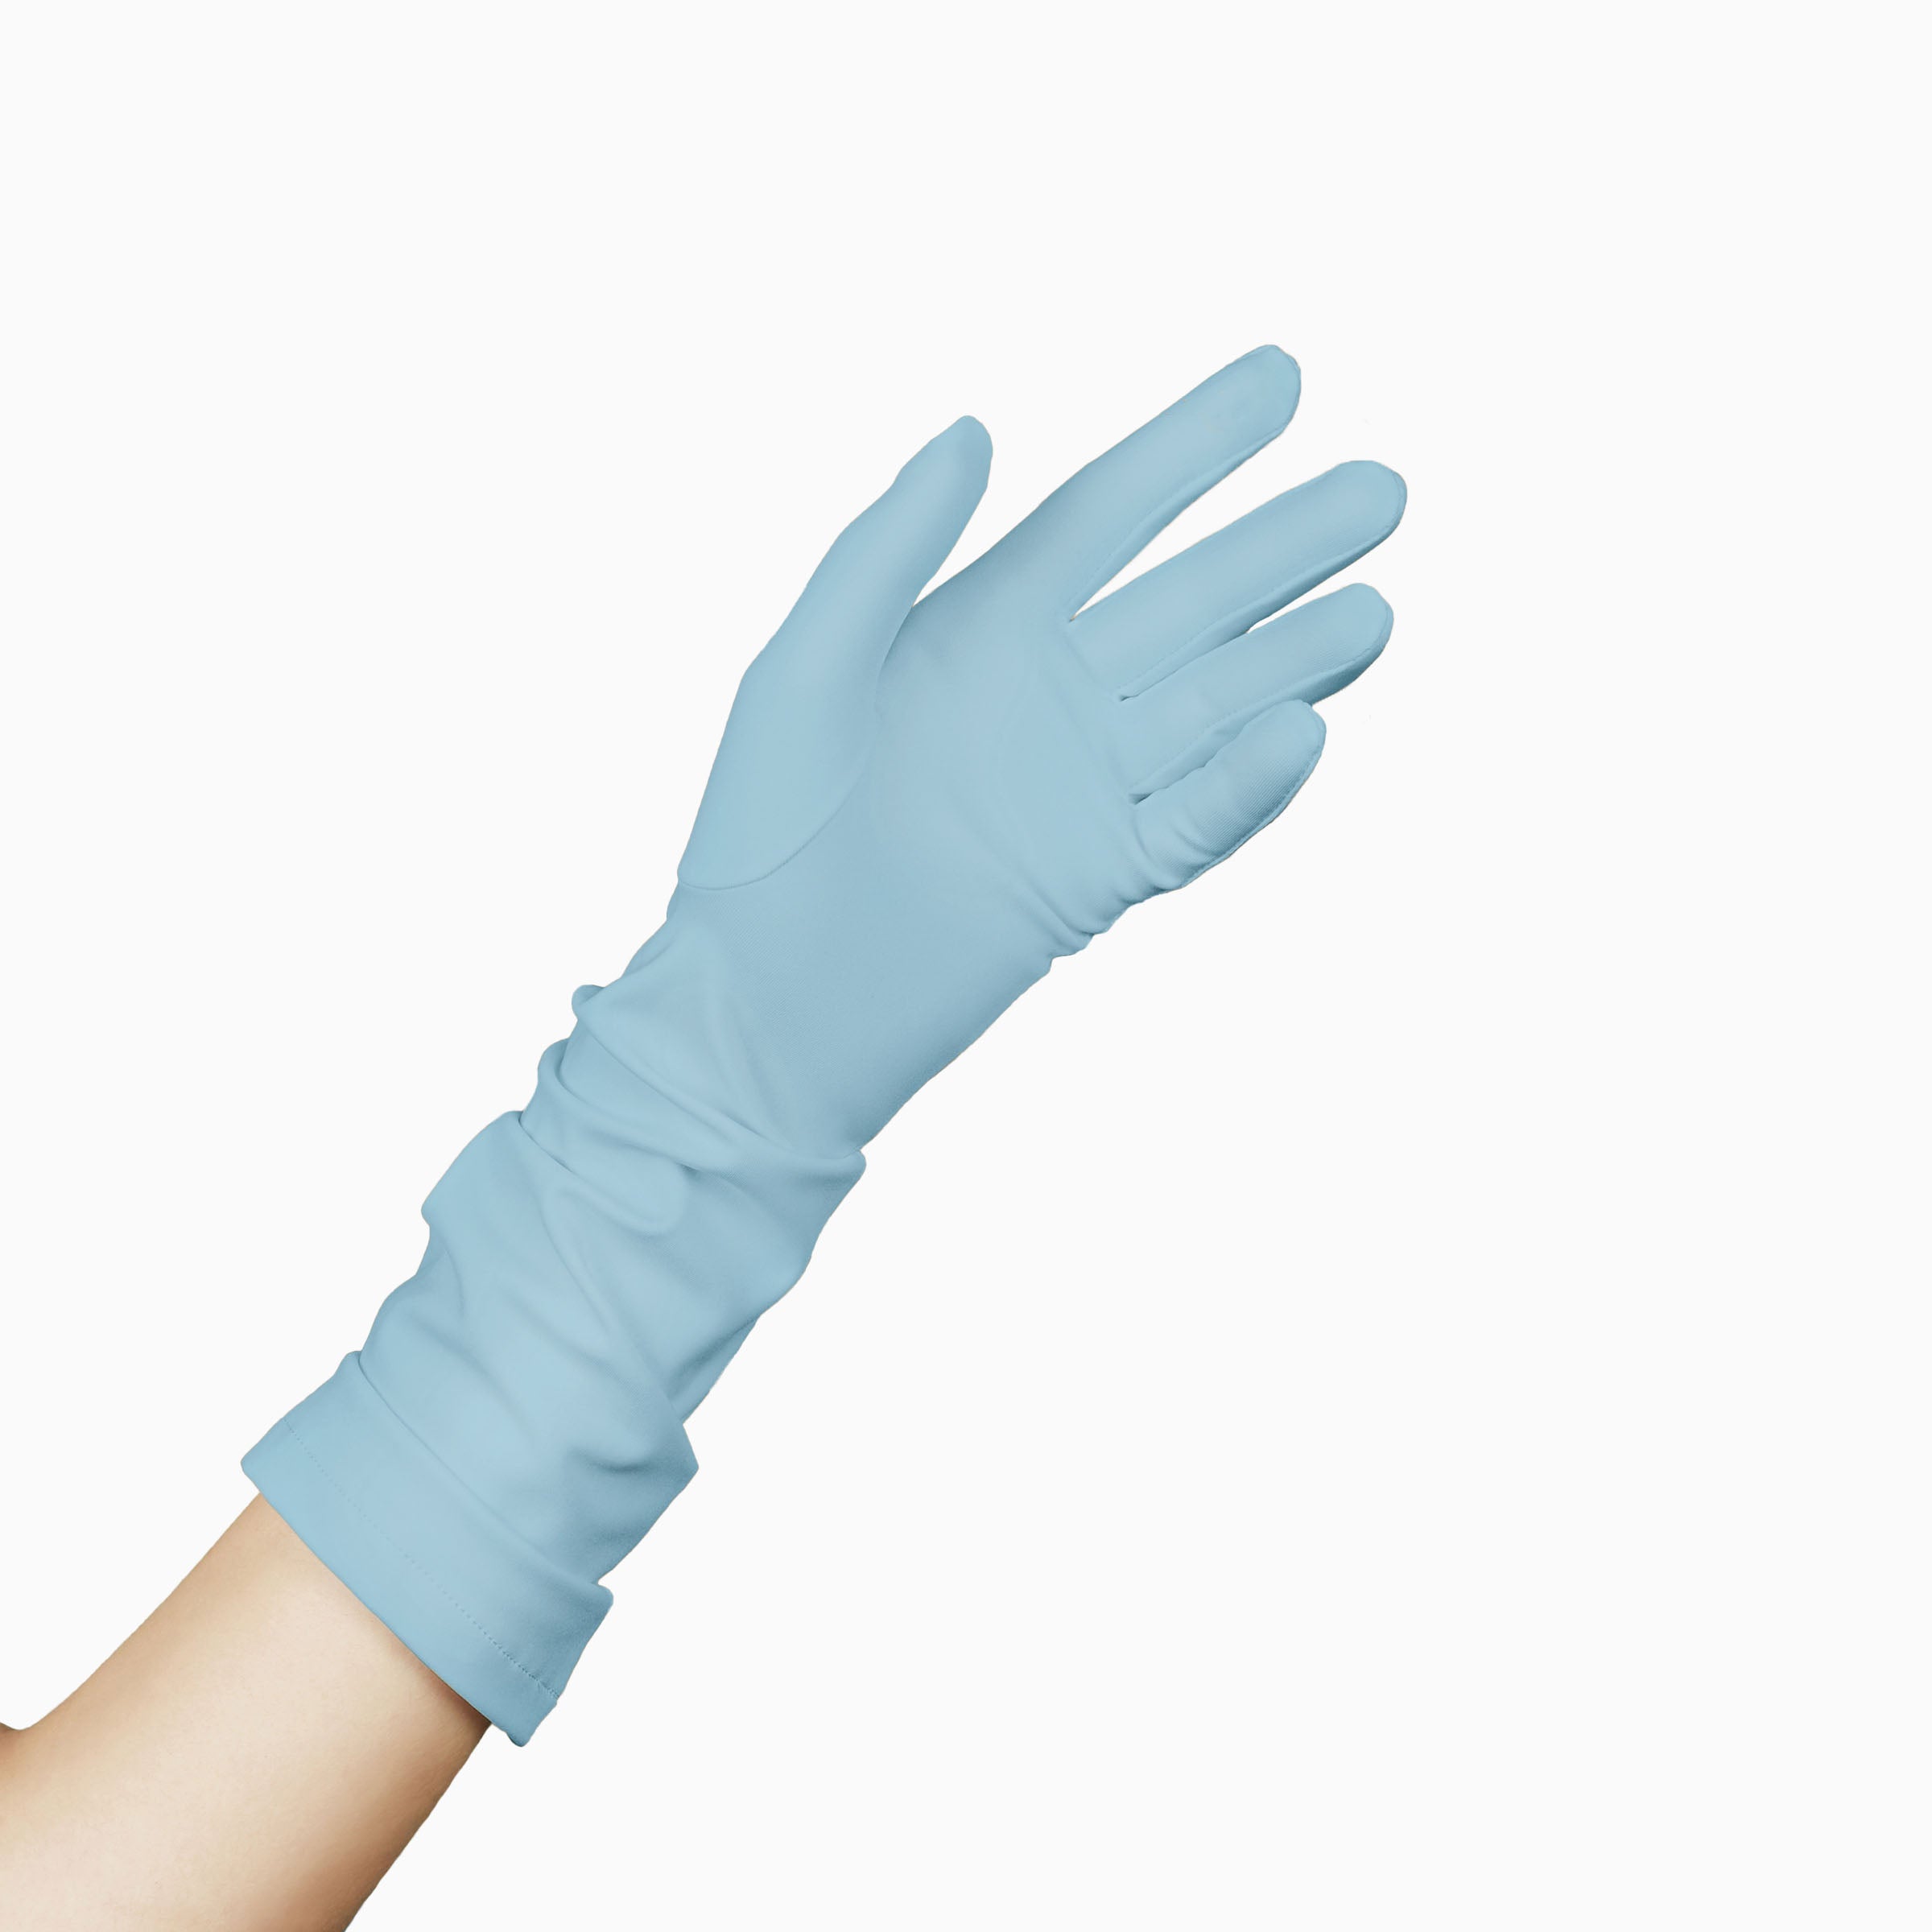 THE JILL light blue gloves for women.